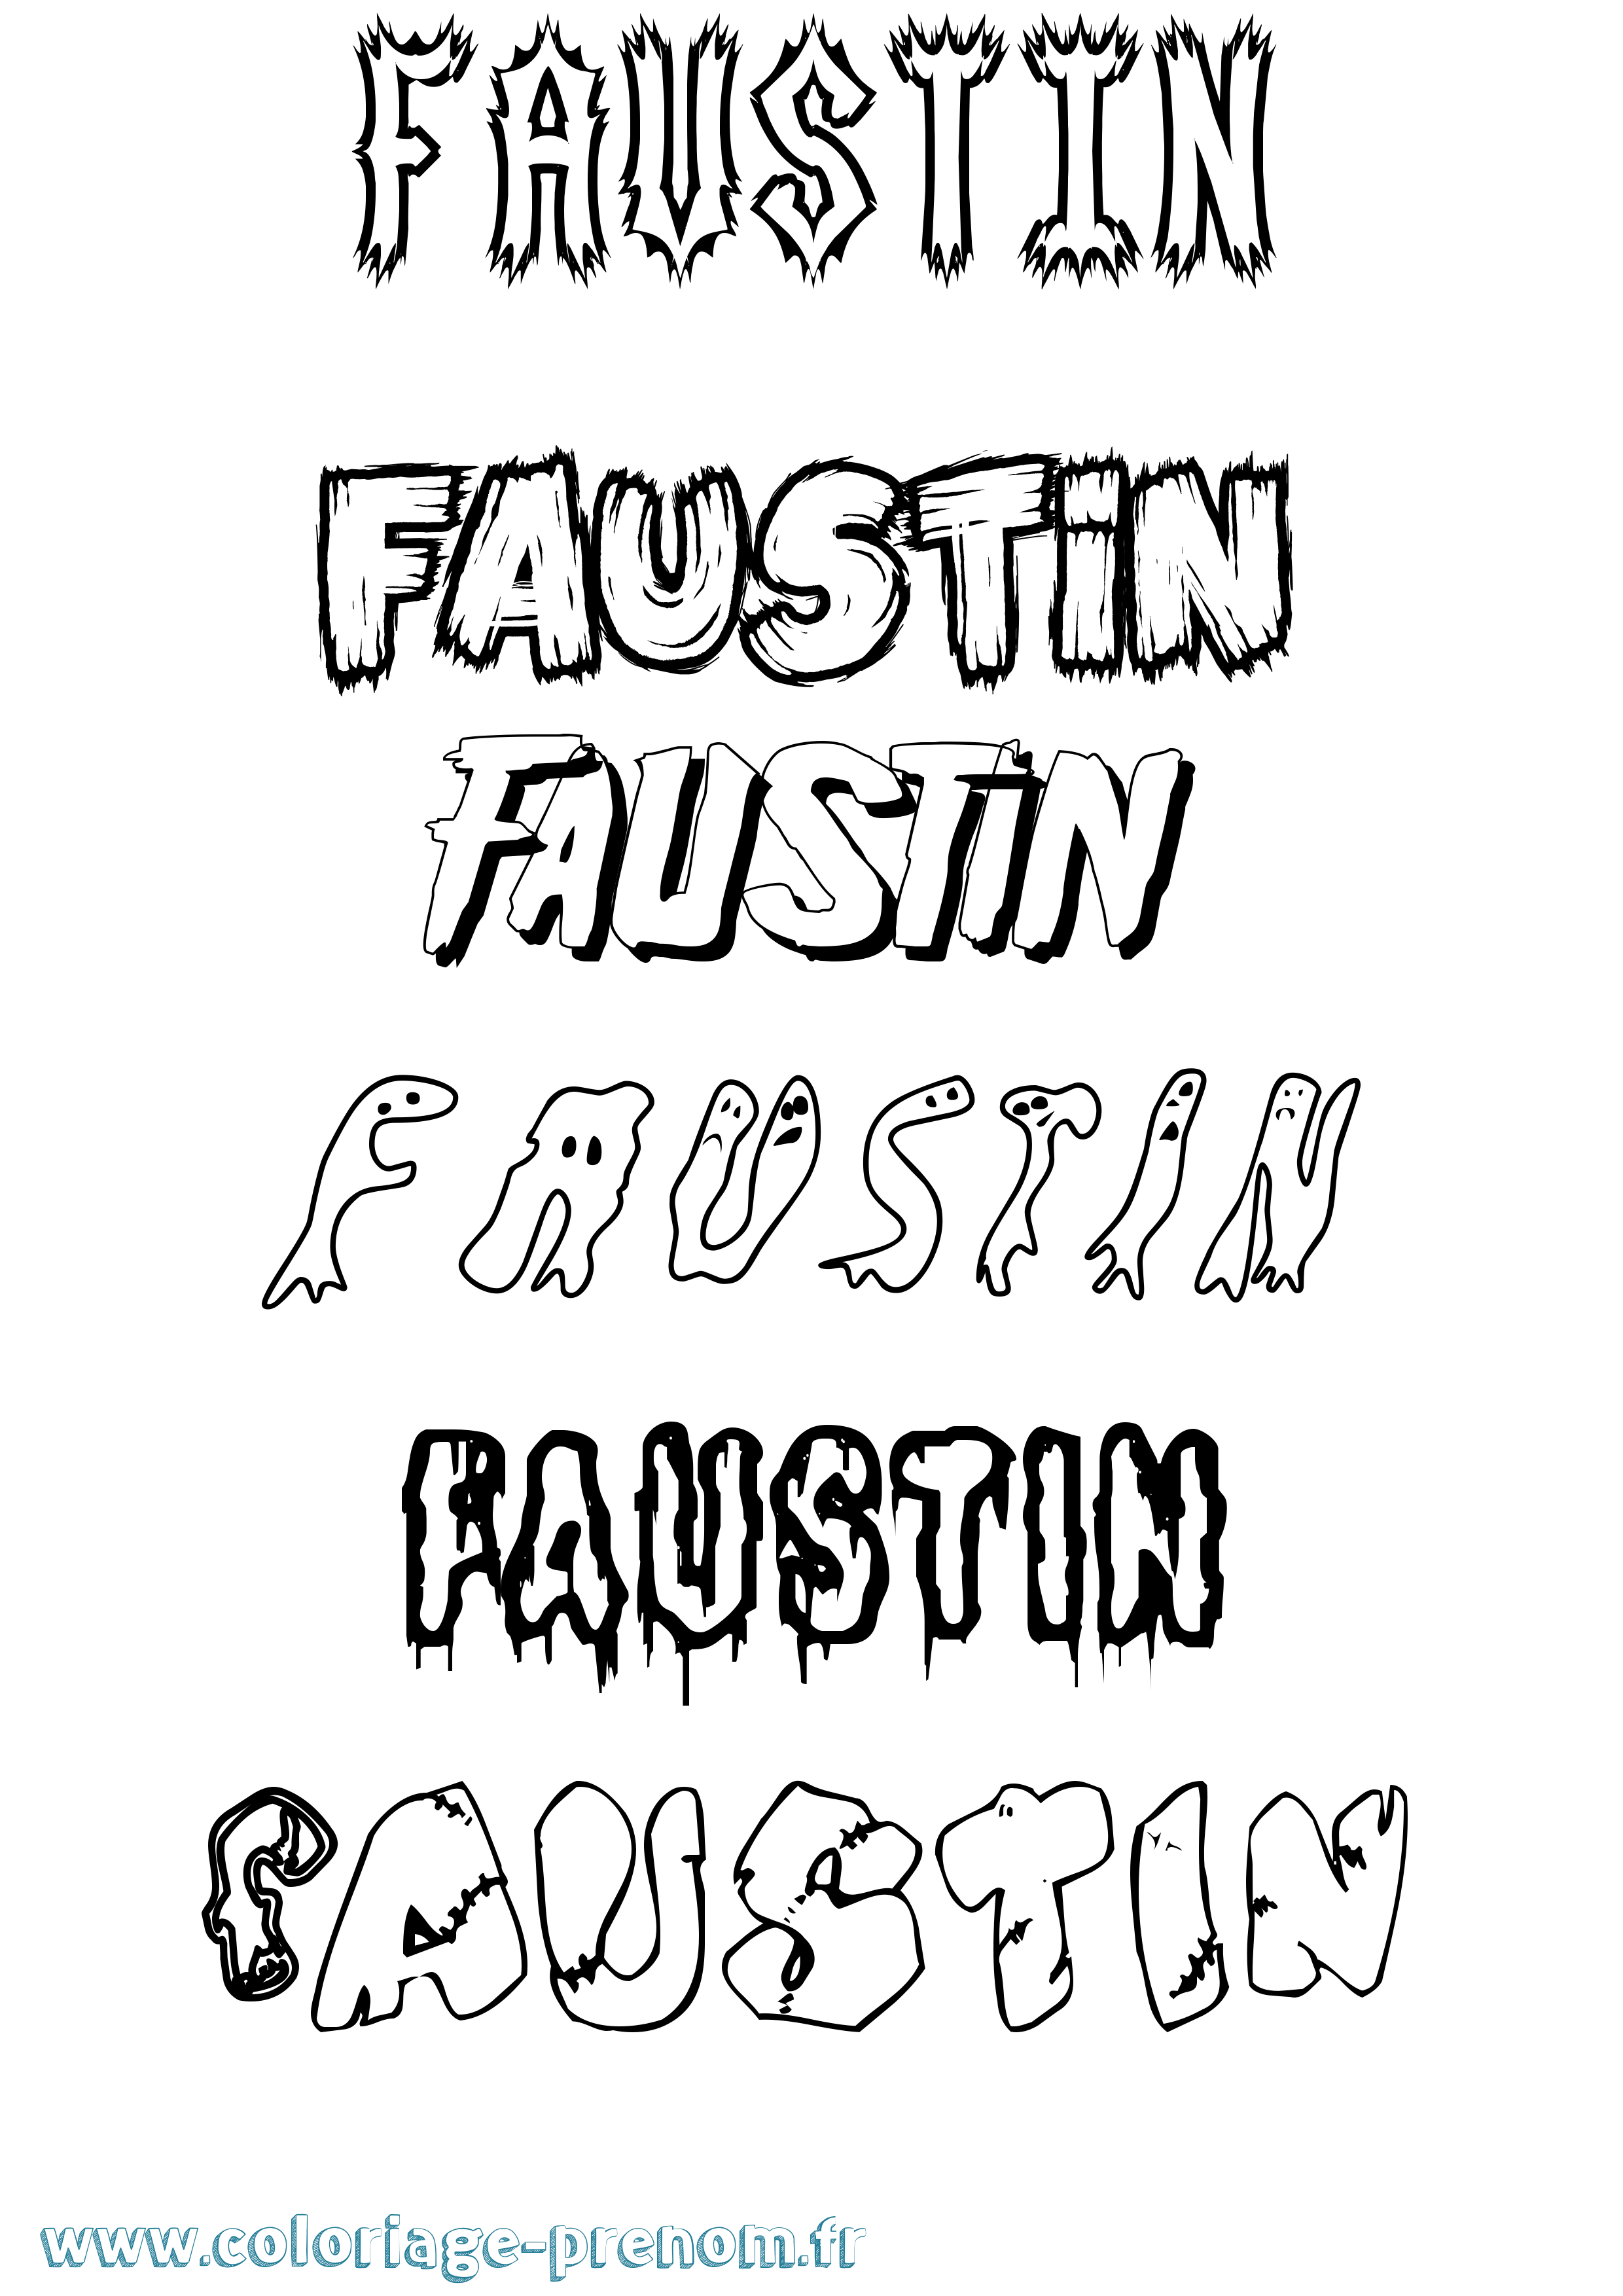 Coloriage prénom Faustin Frisson